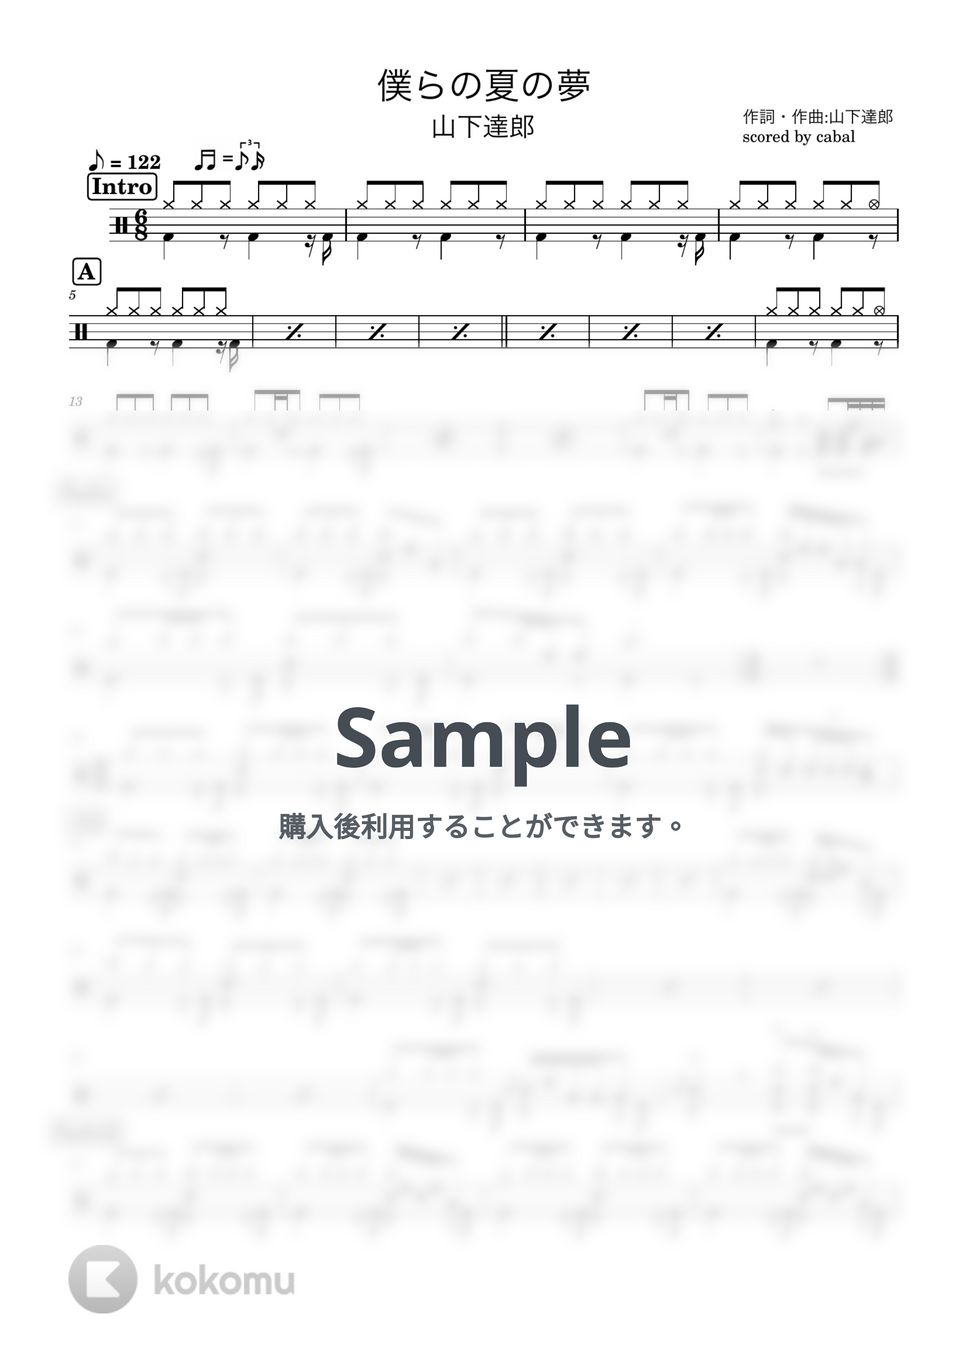 山下達郎 - 僕らの夏の夢 (ドラム譜面) by cabal